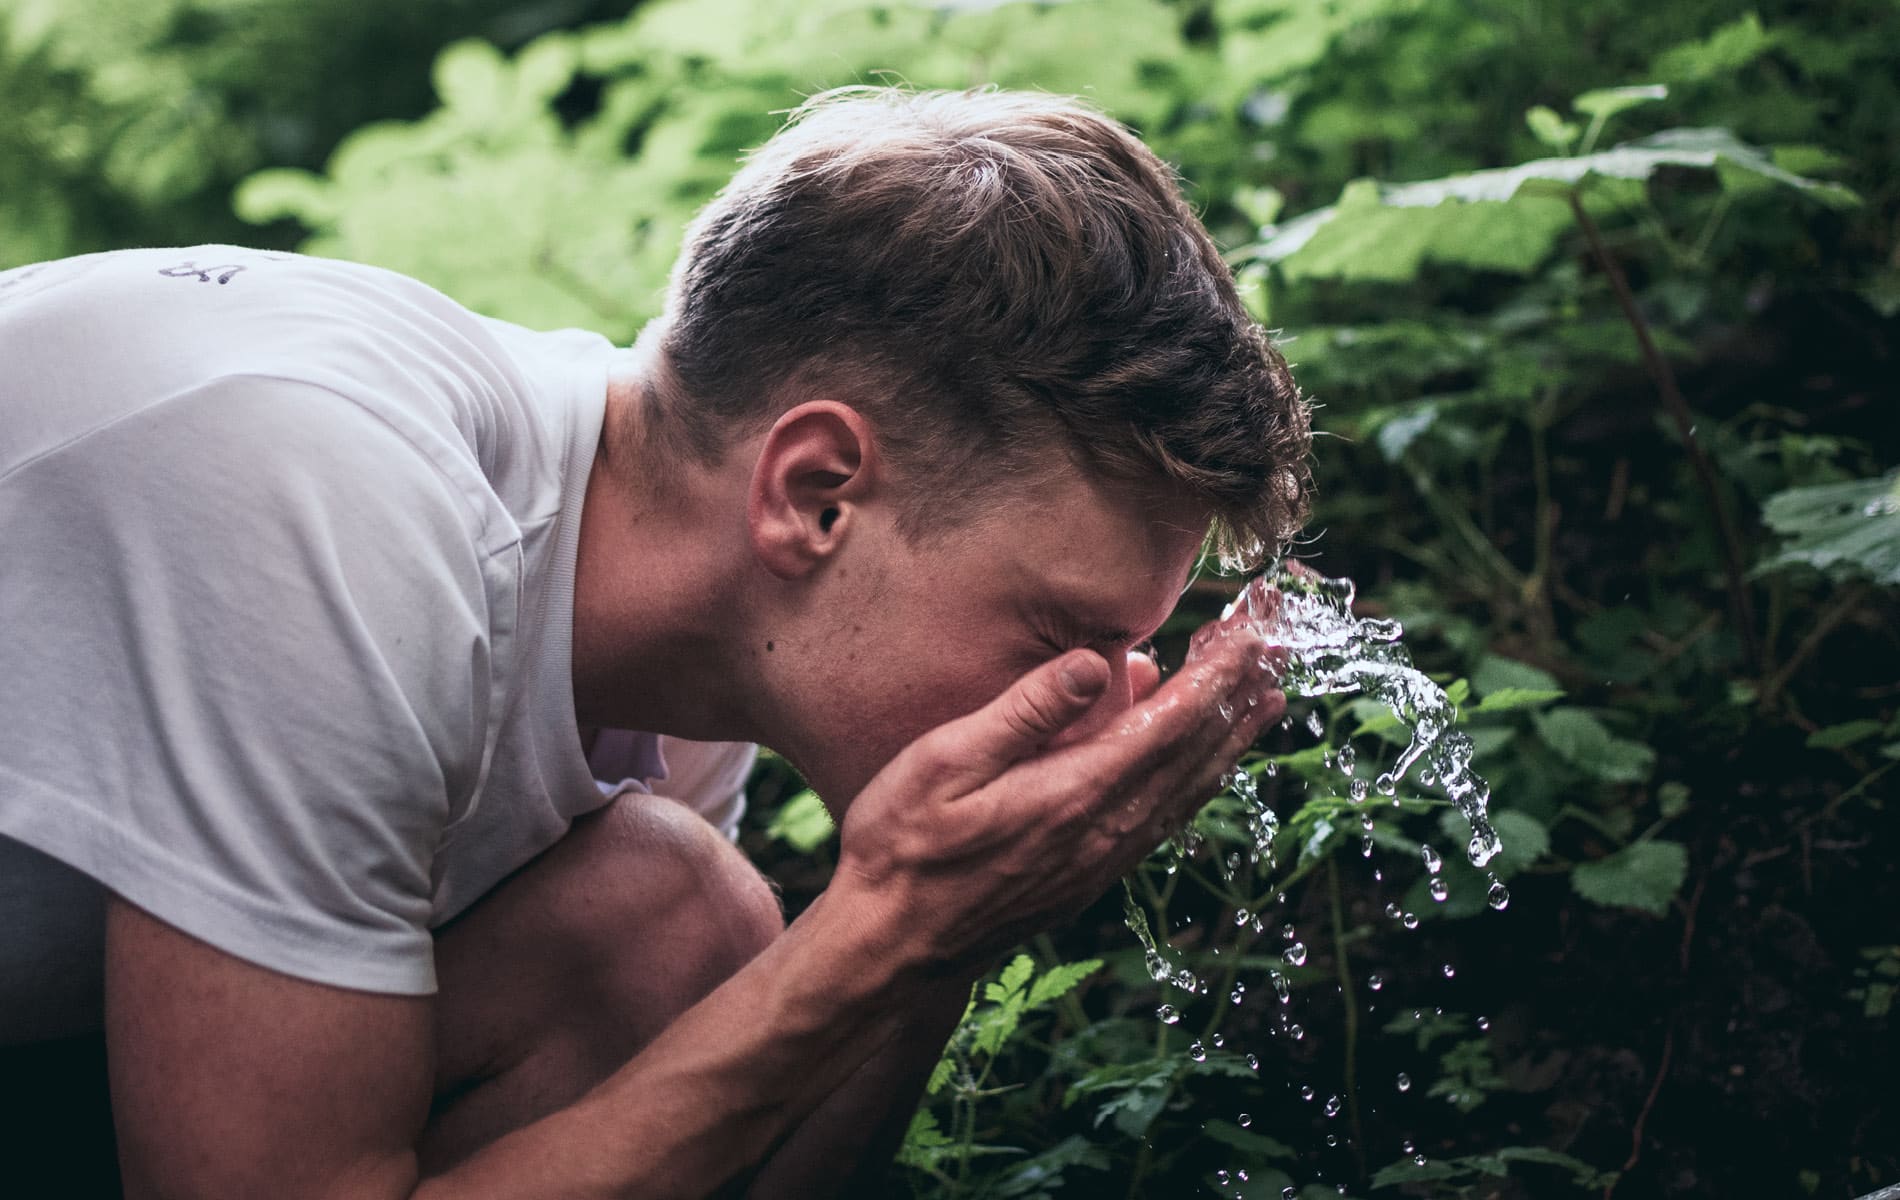 Mann wäscht sein Gesicht mit Wasser